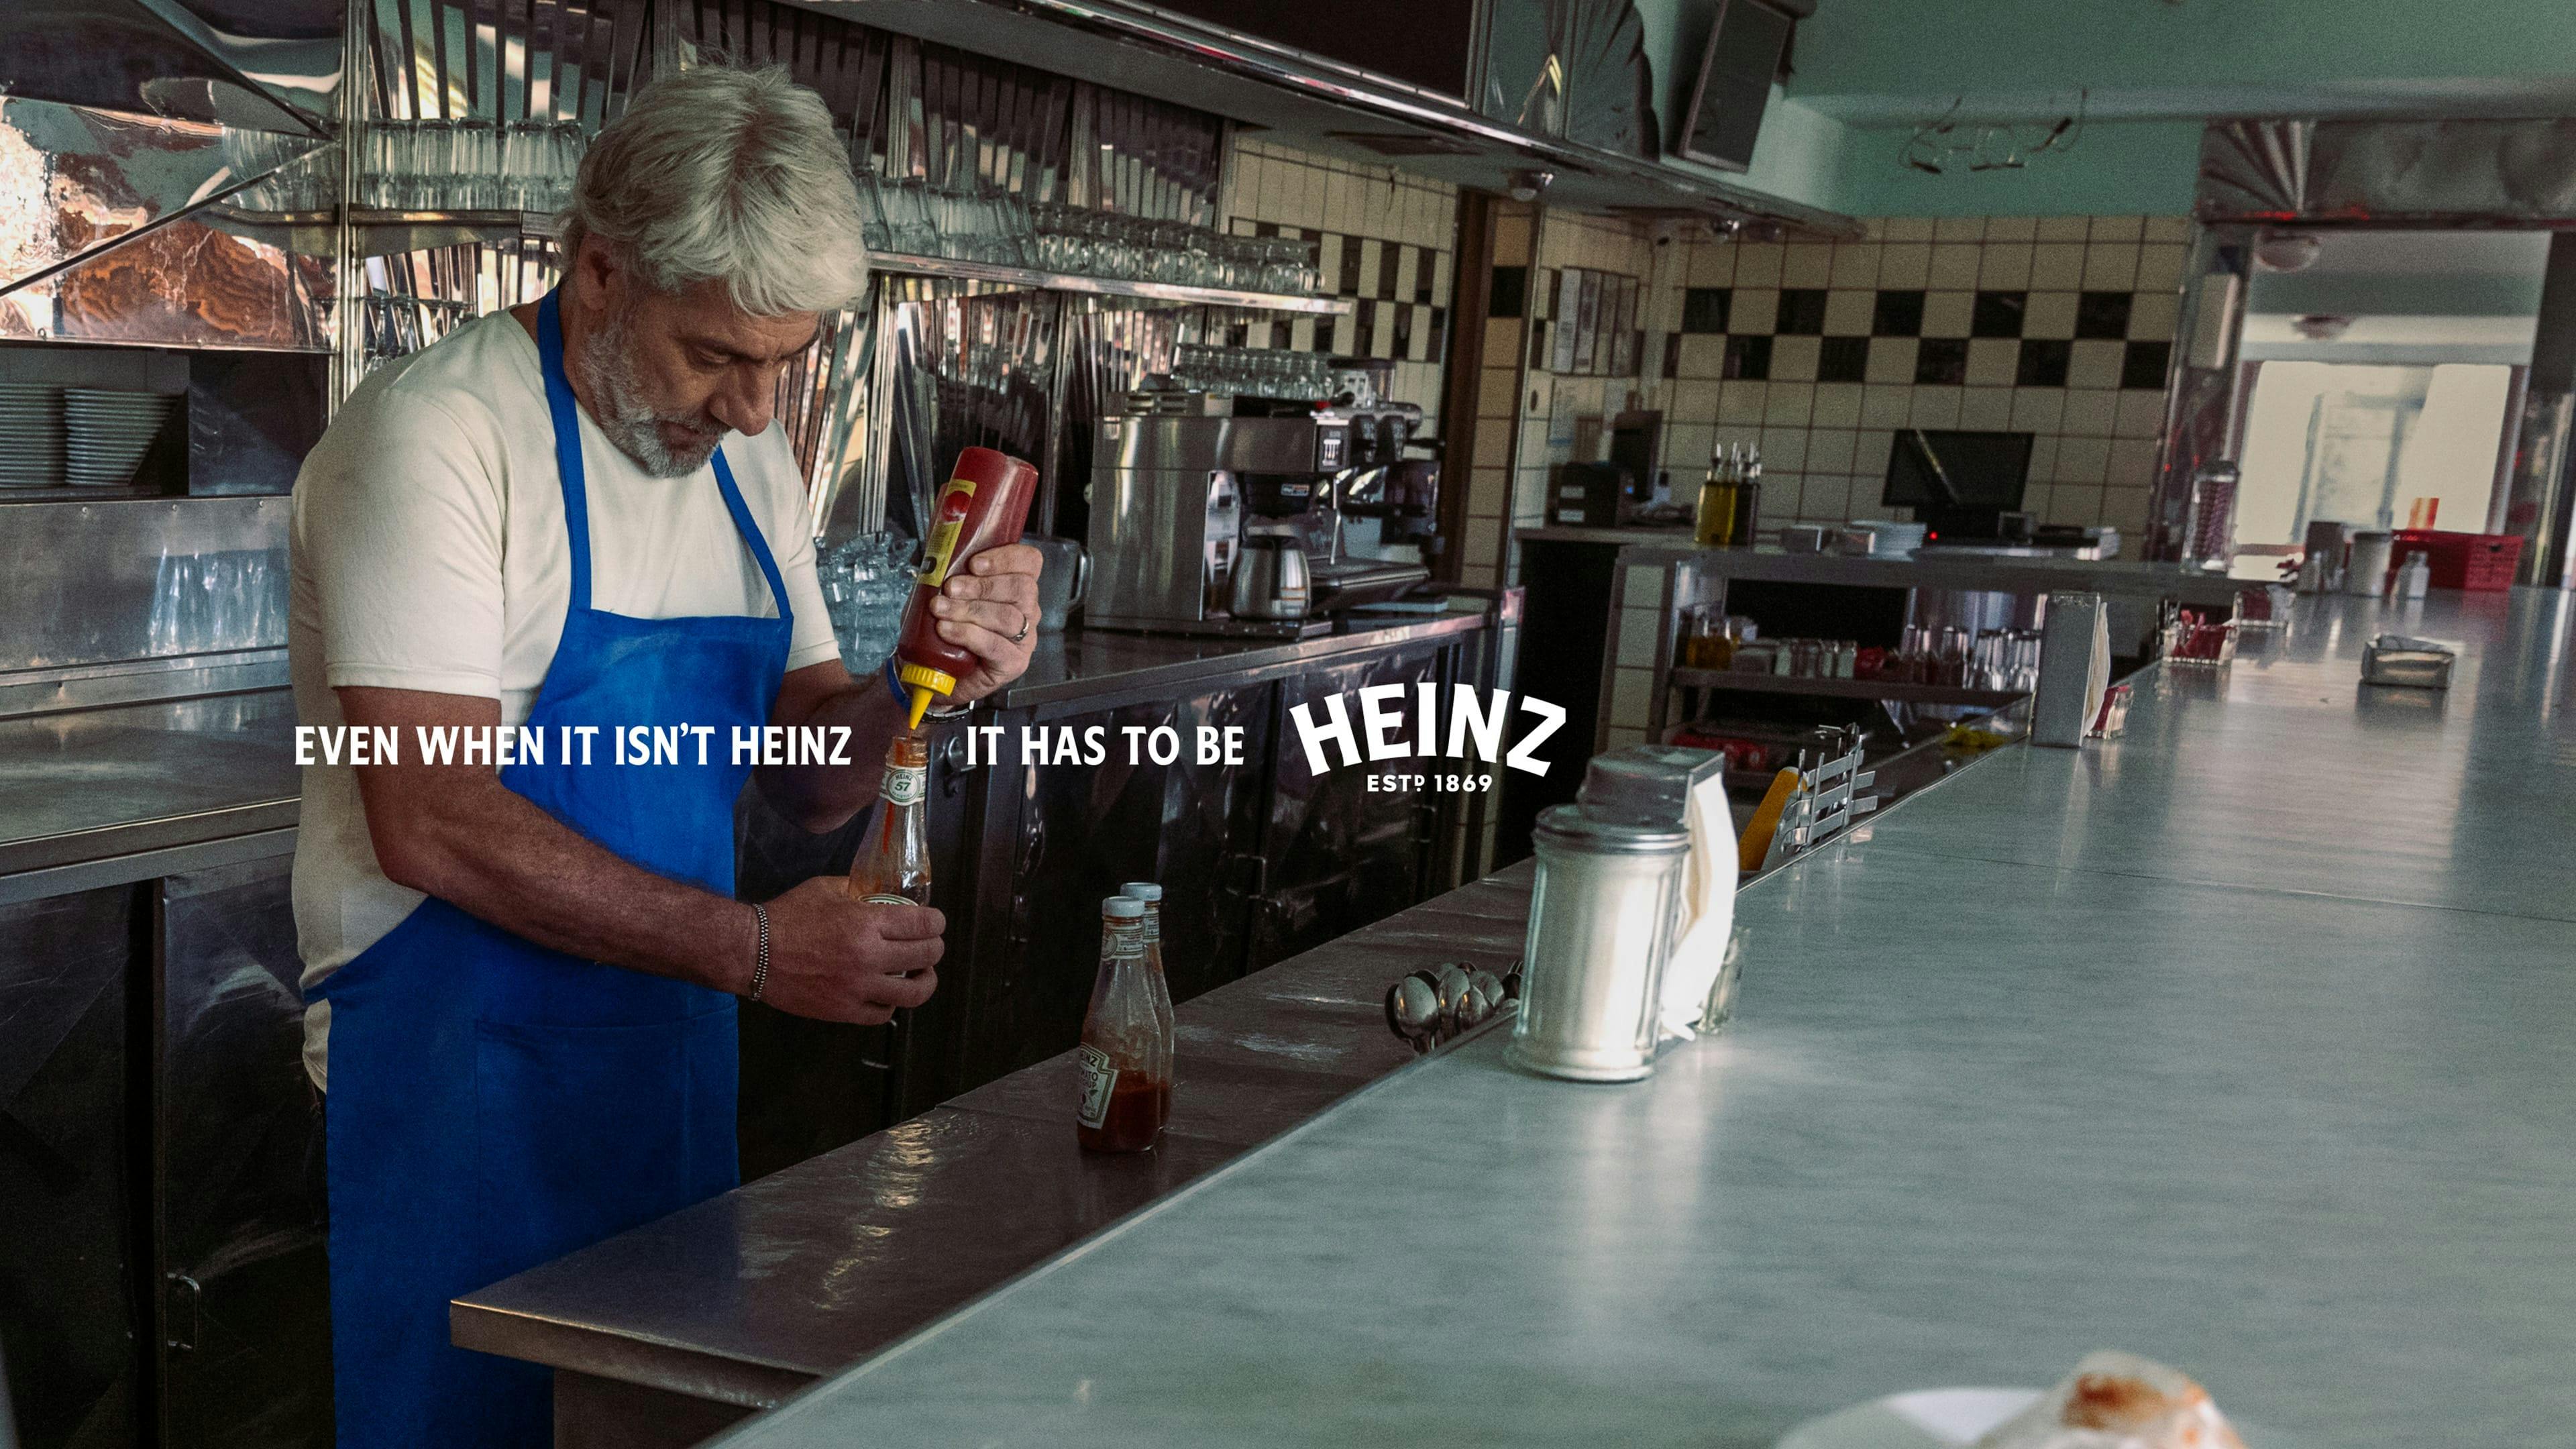 Un homme avec les cheveux blancs et un tablier bleu est en train de mettre du ketchup qui n’est pas du Heinz dans une bouteille de ketchup Heinz dans un restaurant de type casse-croûte.